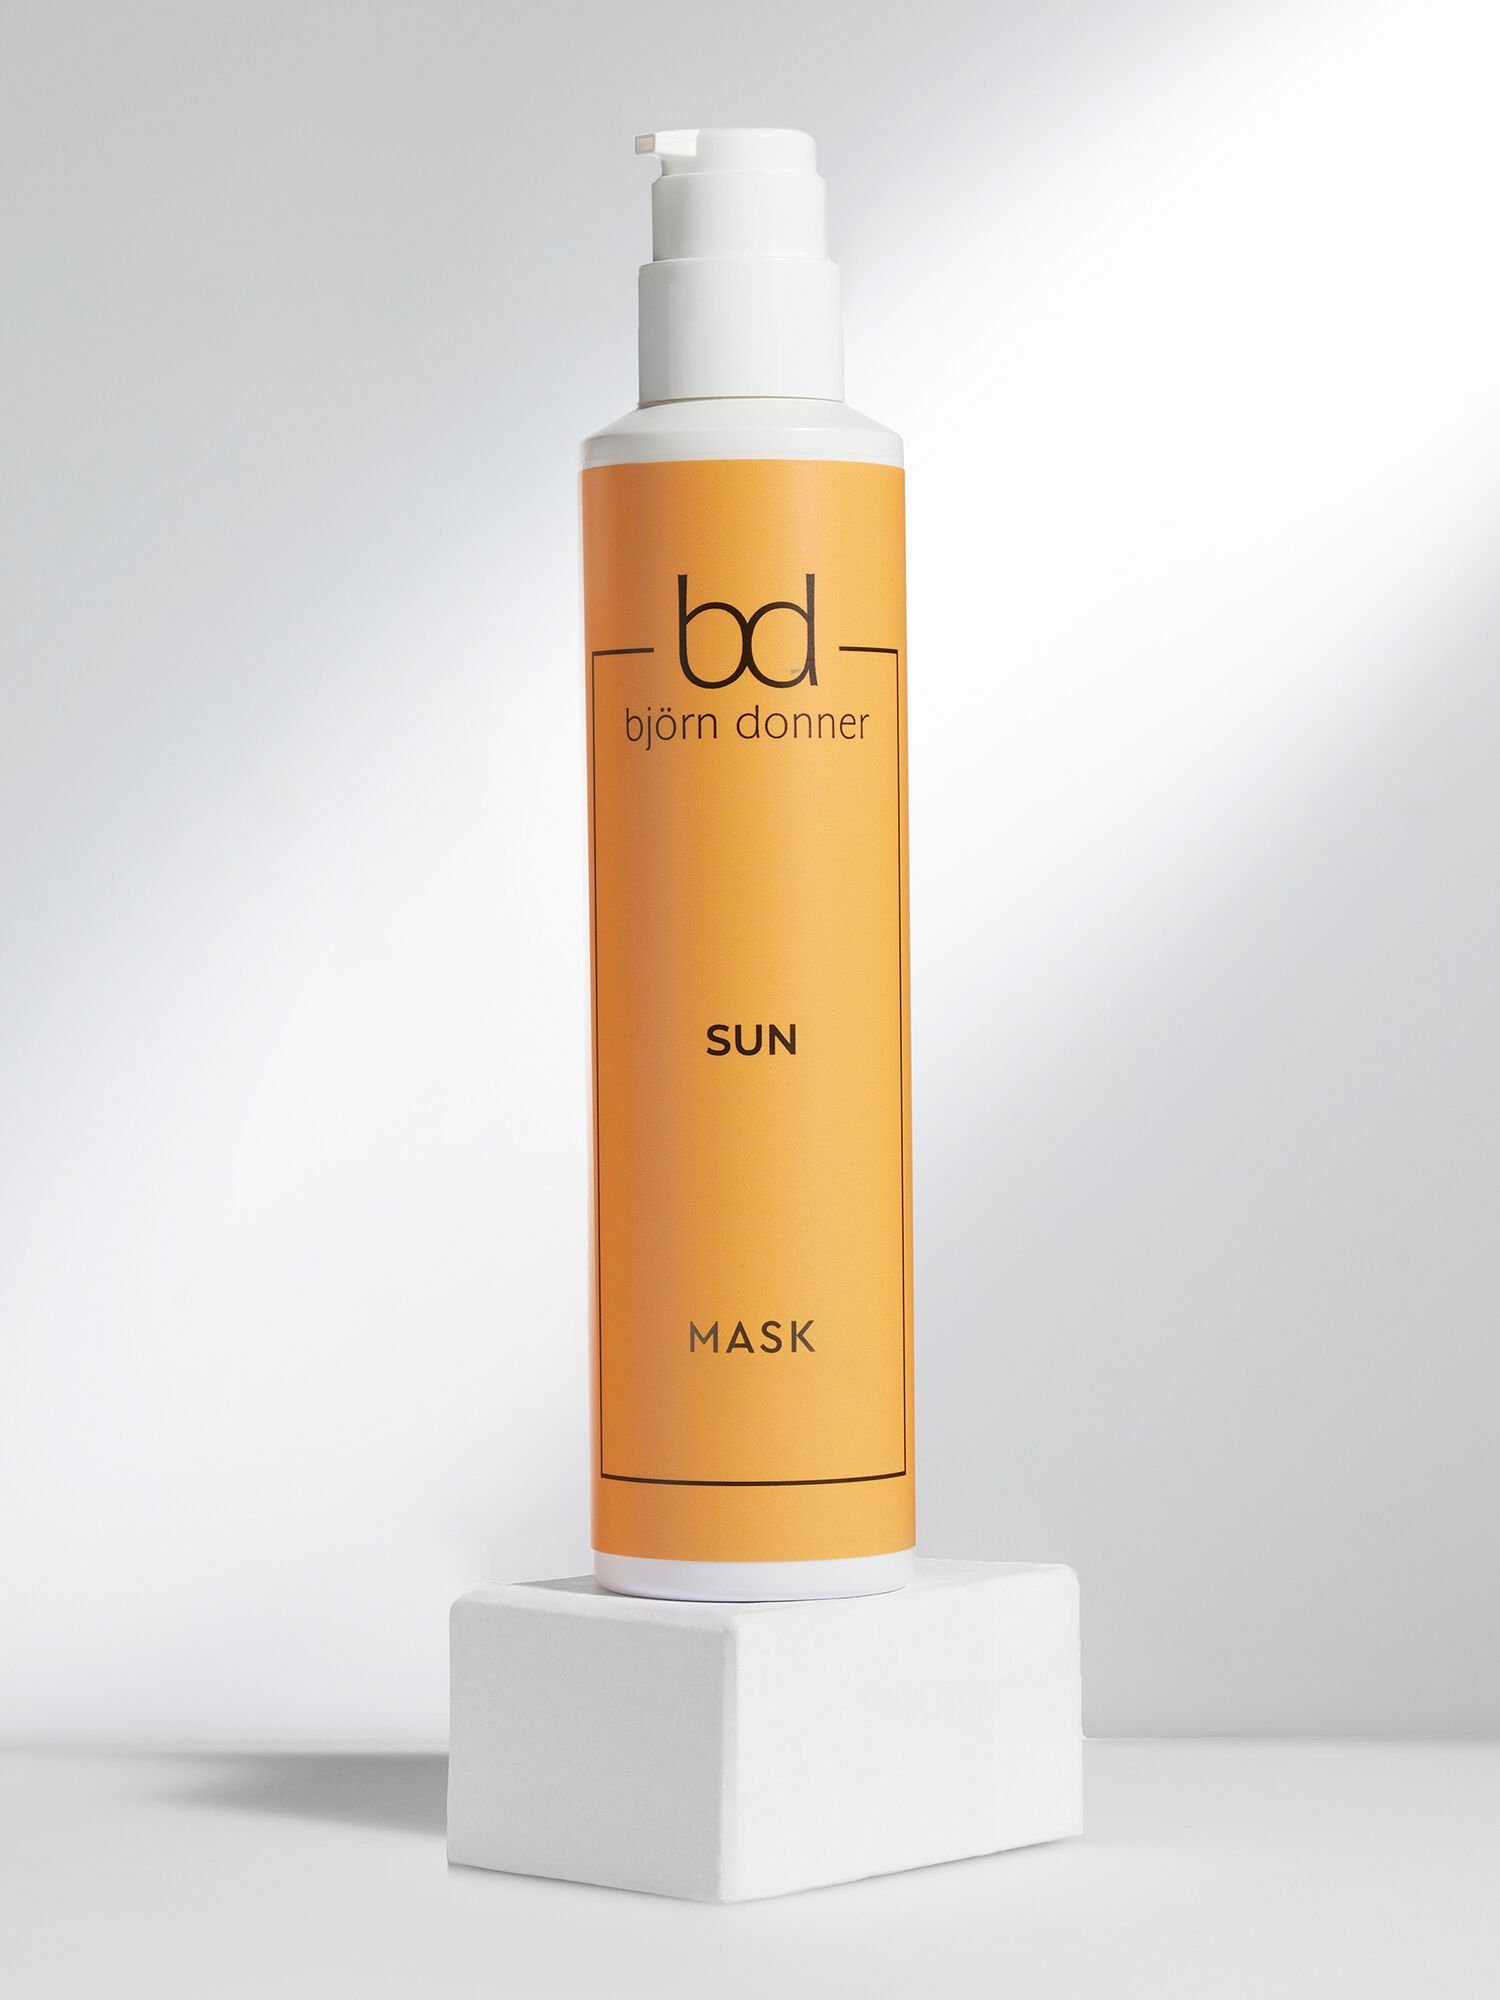 Björn Donner Haarmaske "Sun", 200 ml, spendet wertvolle Feuchtigkeit & verbessert die Haarstruktur